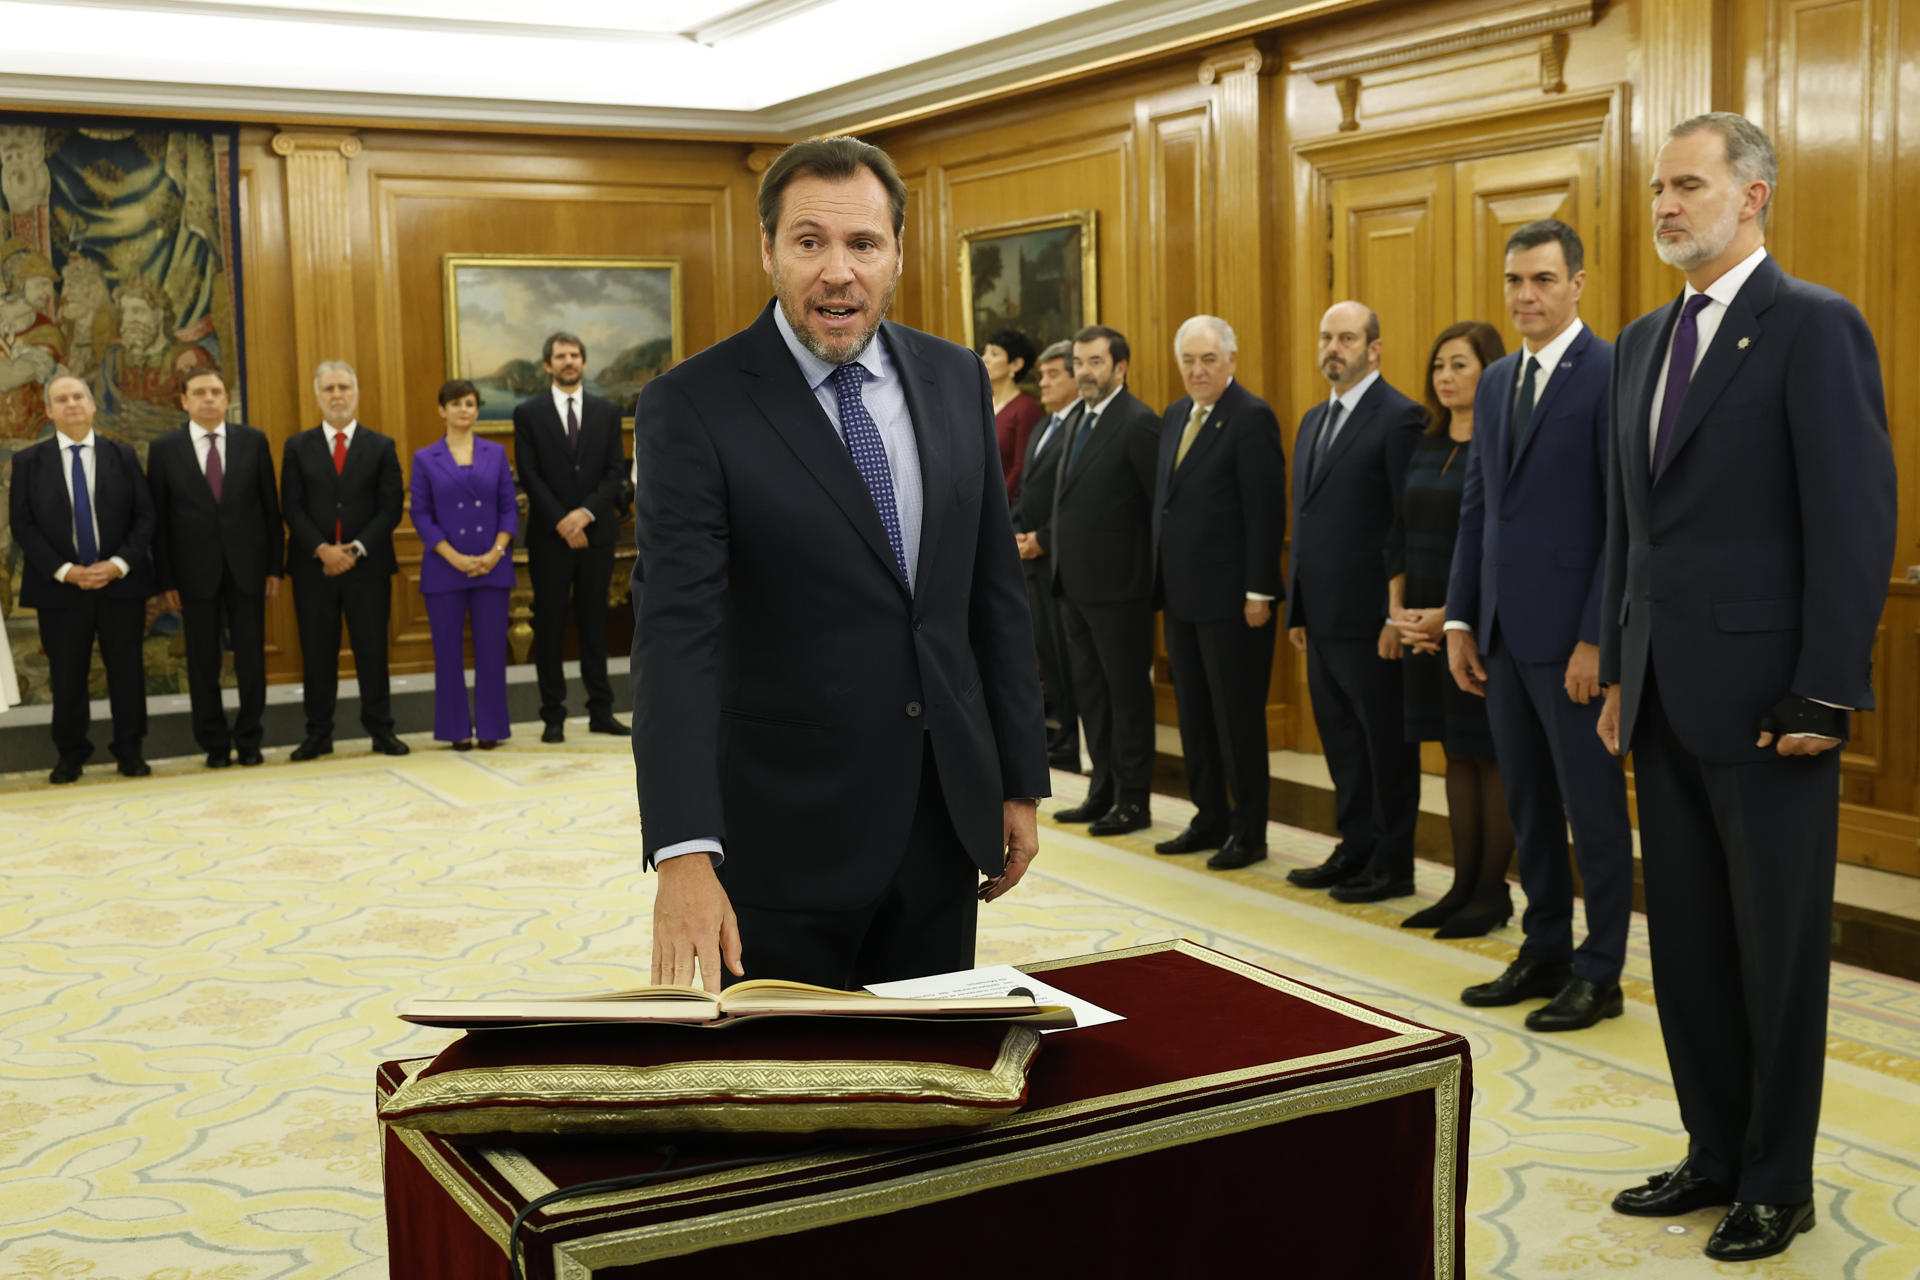 El ministre Óscar Puente admet que el 'lawfare' és una realitat: "Negar-ho és un gest de cinisme"